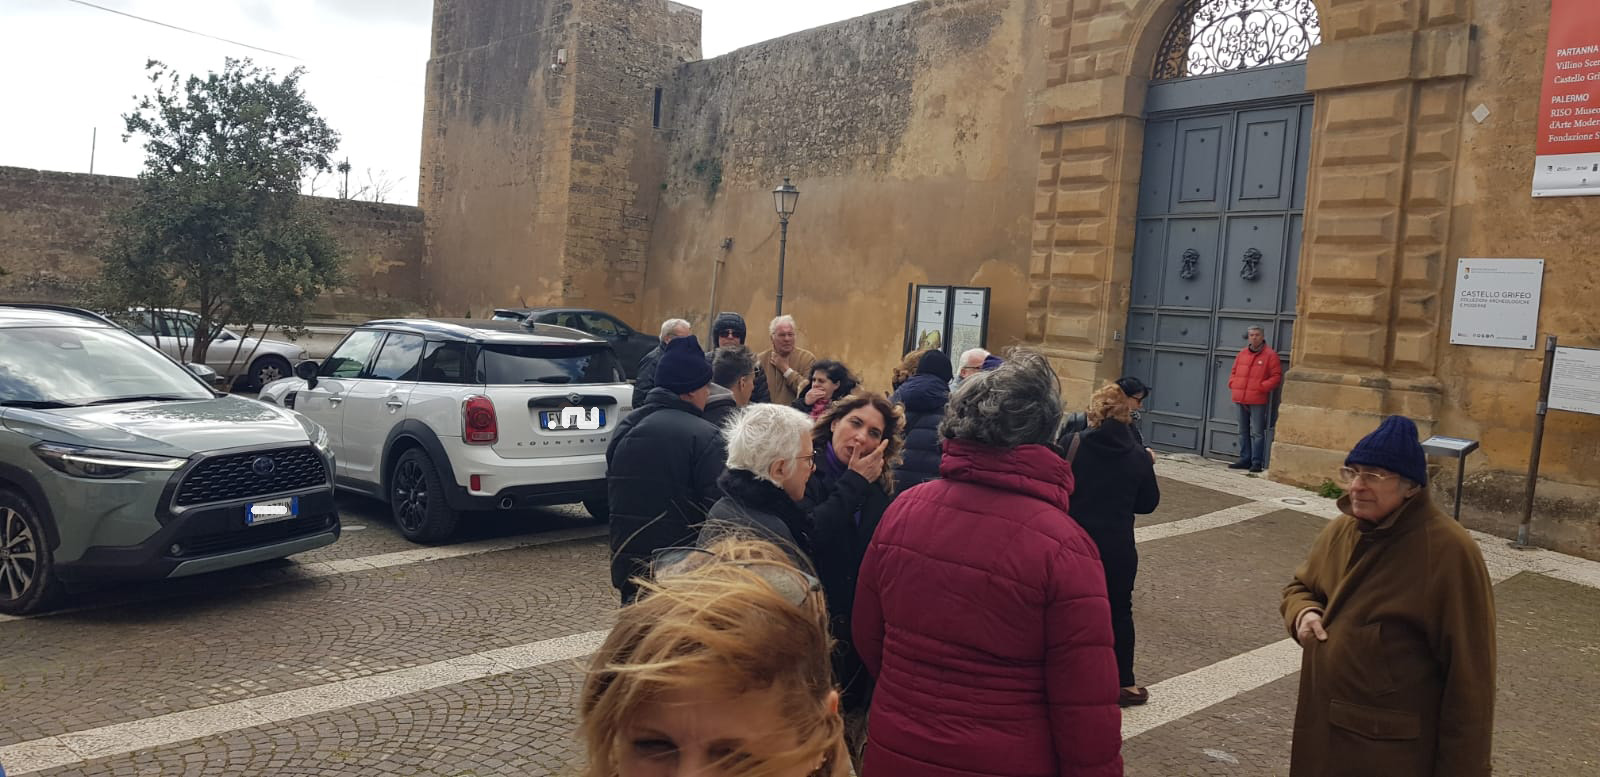 Nella prima domenica di mese quando si entra gratuitamente nei musei, il Castello di Partanna ieri era chiuso. Centinaia di visitatori rimasti fuori